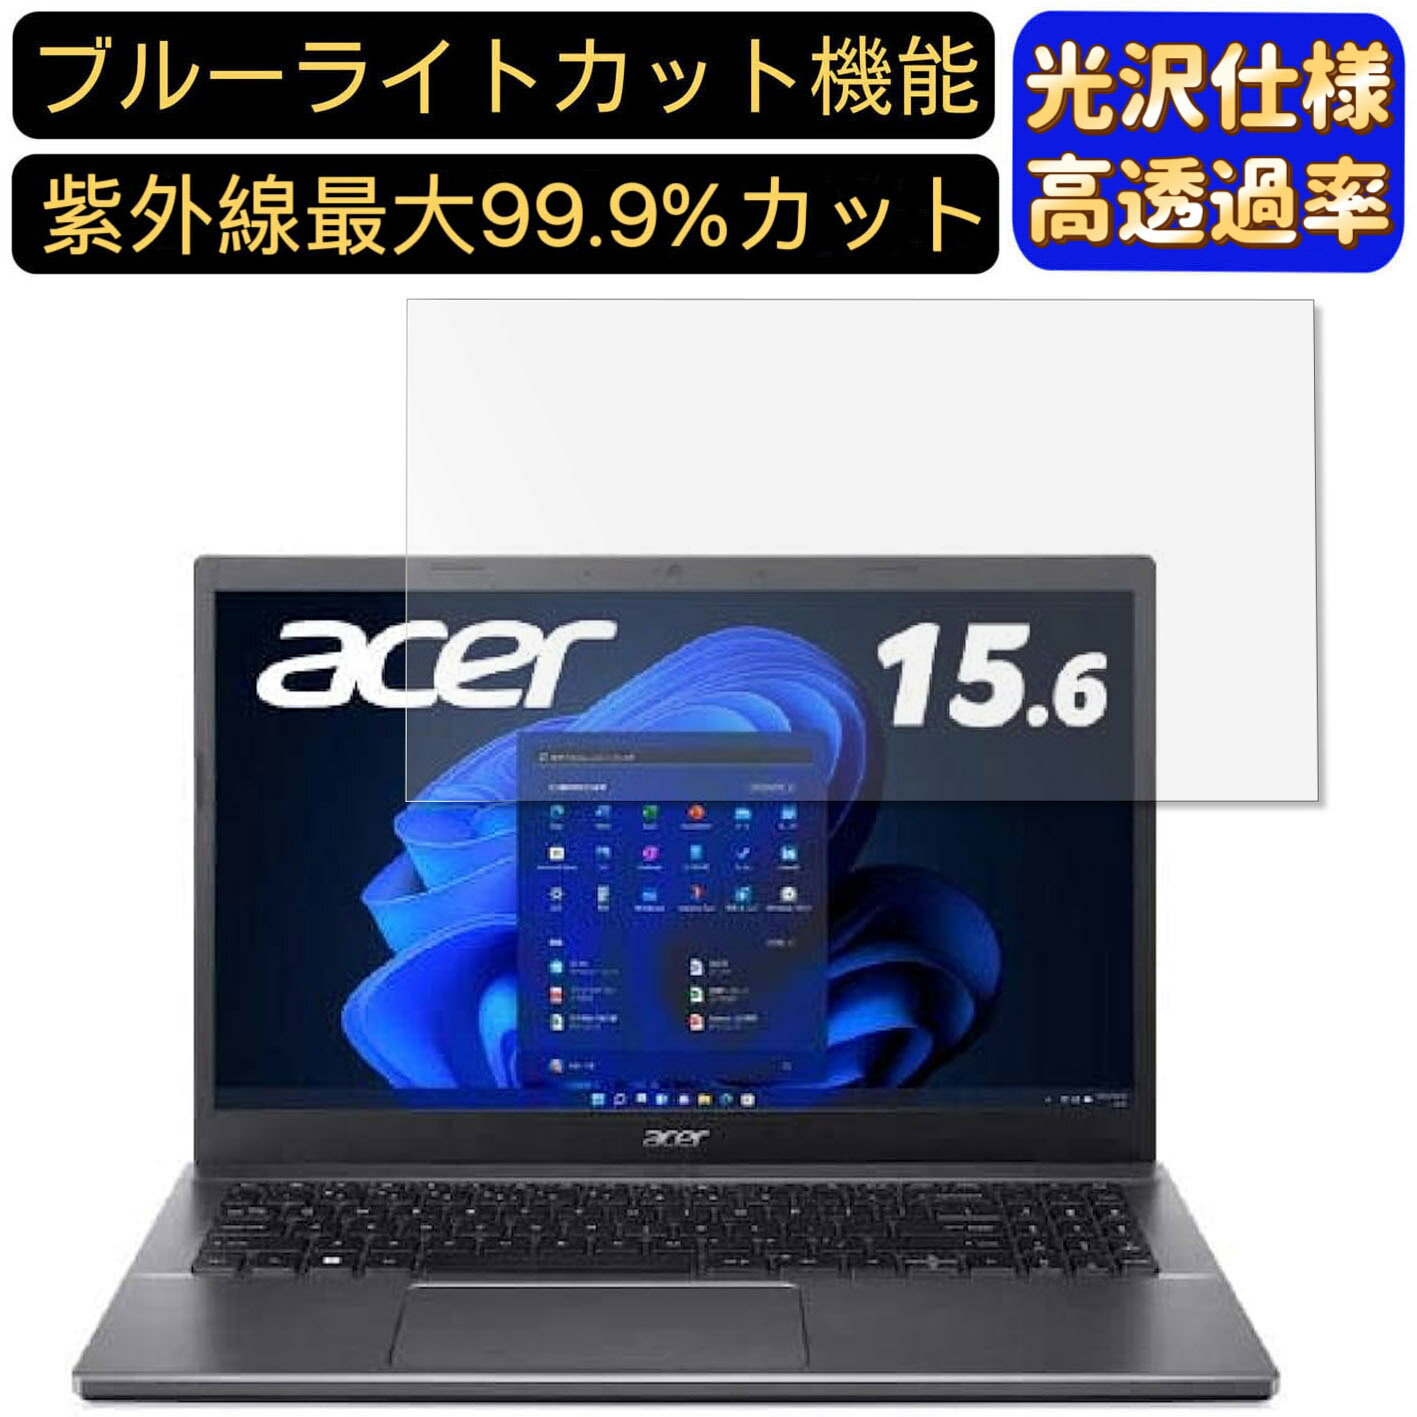 【ポイント2倍】acer A515-57-A38U/SF (Aspi